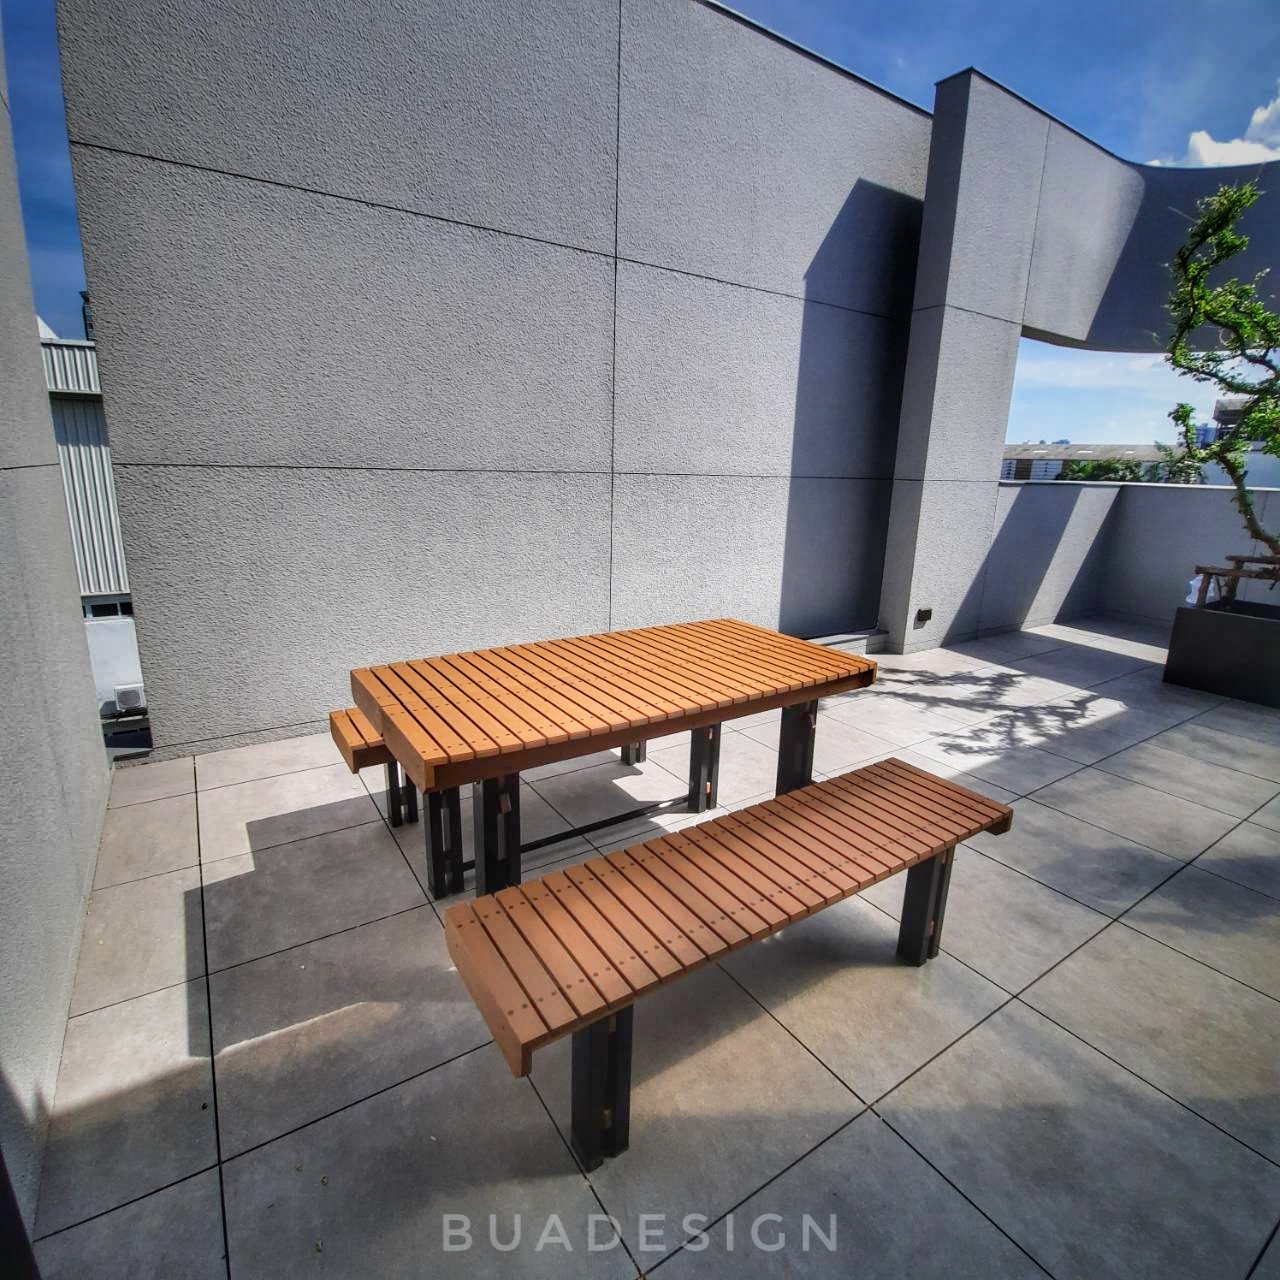 #เก้าอี้ไฟเบอร์กลาส #buadesignstudio#outdoorfurniture#outdoorbench#bench#เก้าอี้สนาม#ม้านั่งสนาม#เฟอร์นิเจอร์สนาม#โต๊ะสนาม#เฟอร์นิเจอร์กลางแจ้ง